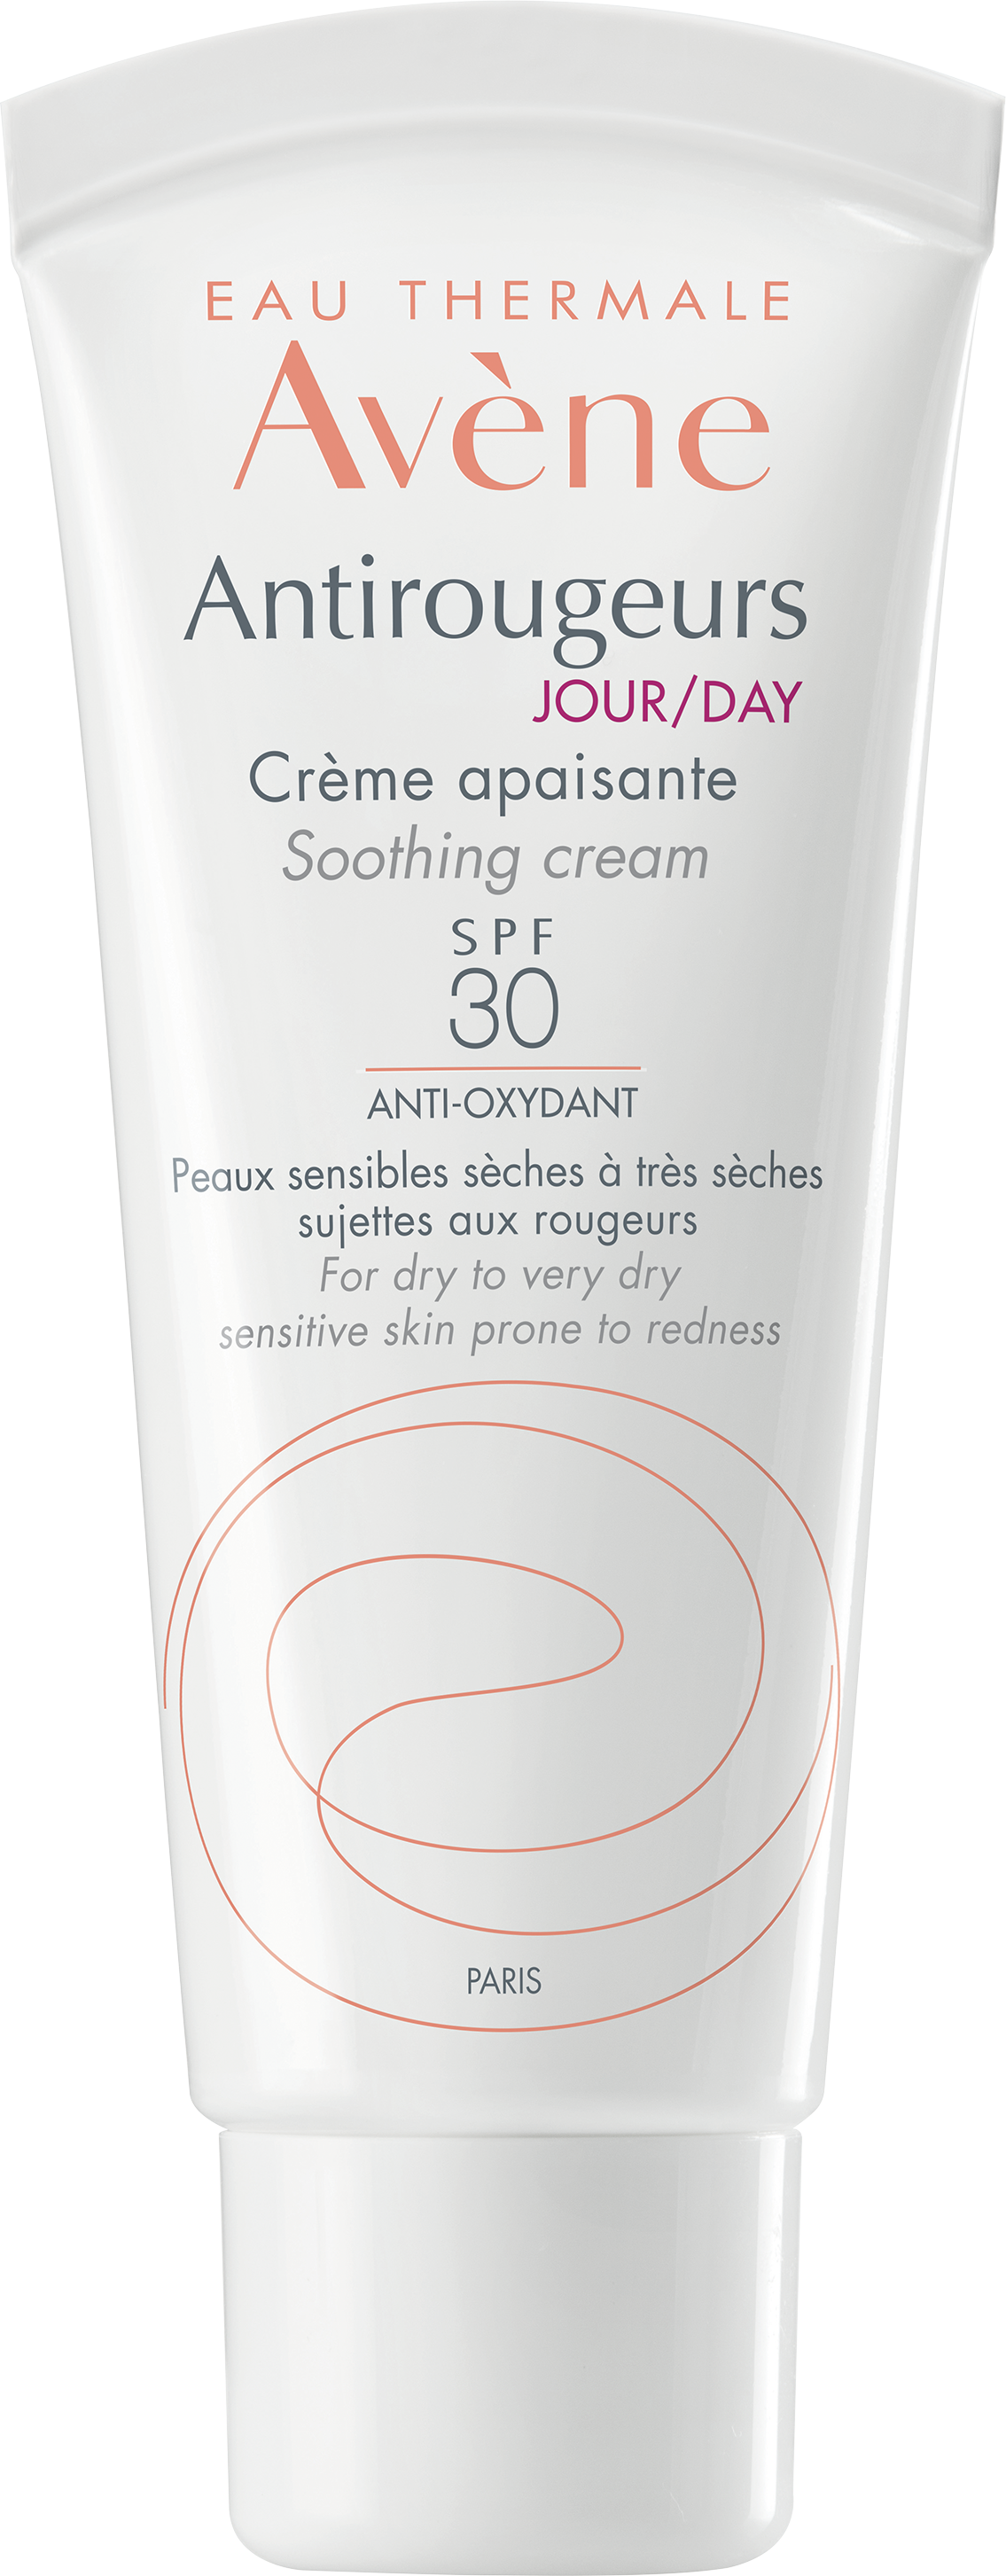 ანტირუჟერი კანის დამამშვიდებელი კრემი მდფ 30 - ავენი / Antirougeurs Soothing  Cream SPF 30 - Avene